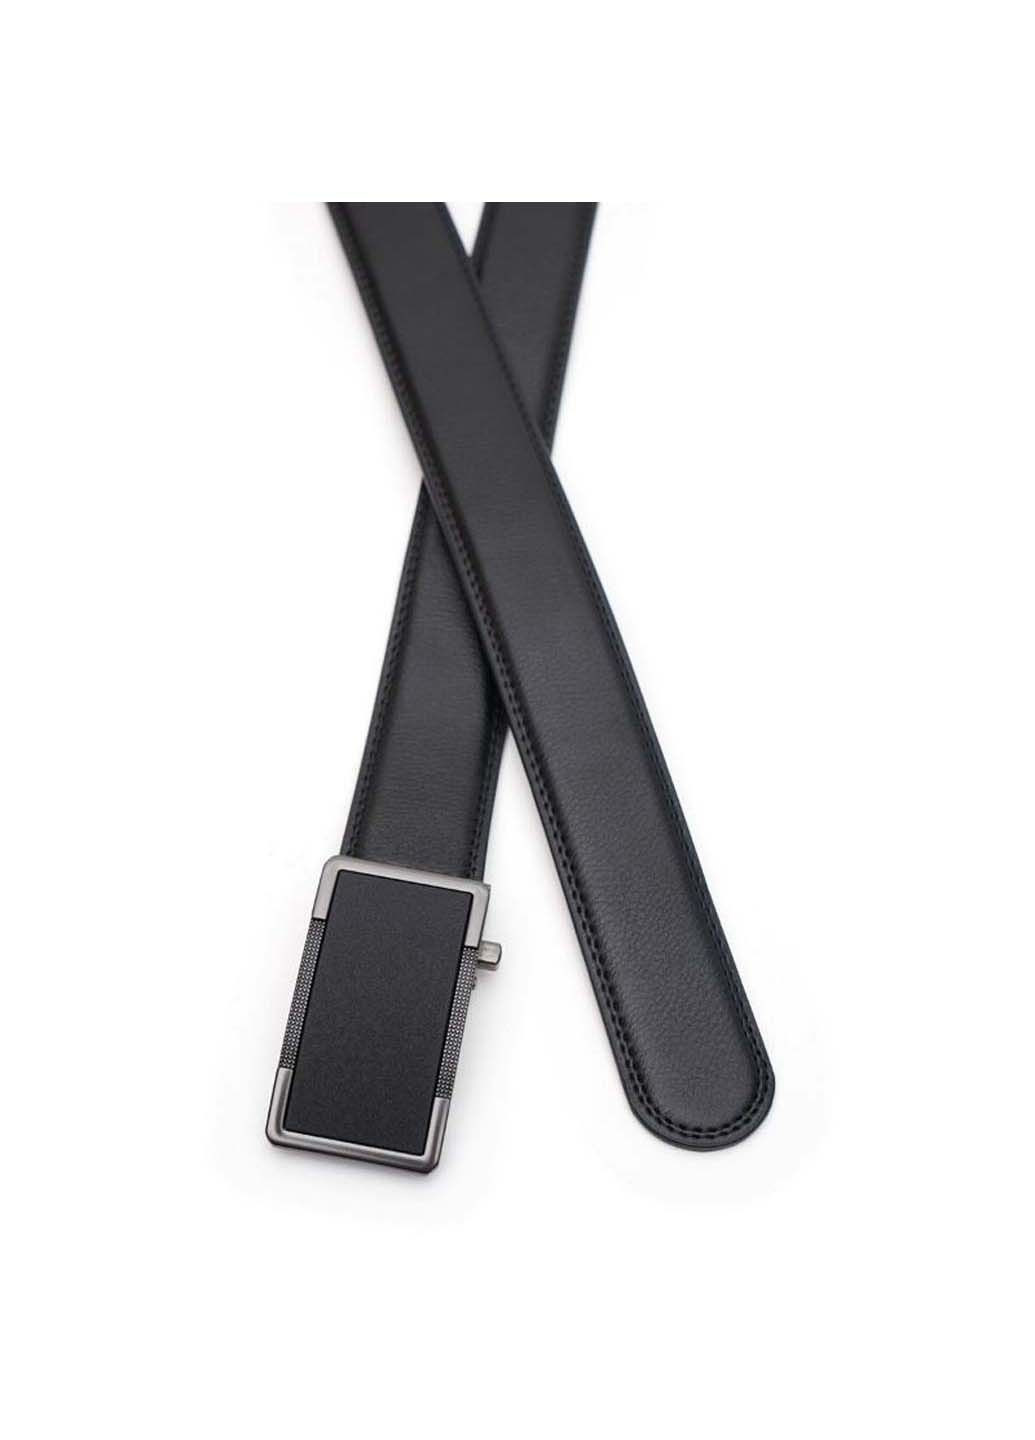 Ремень Borsa Leather v1gkx15-black (285697058)